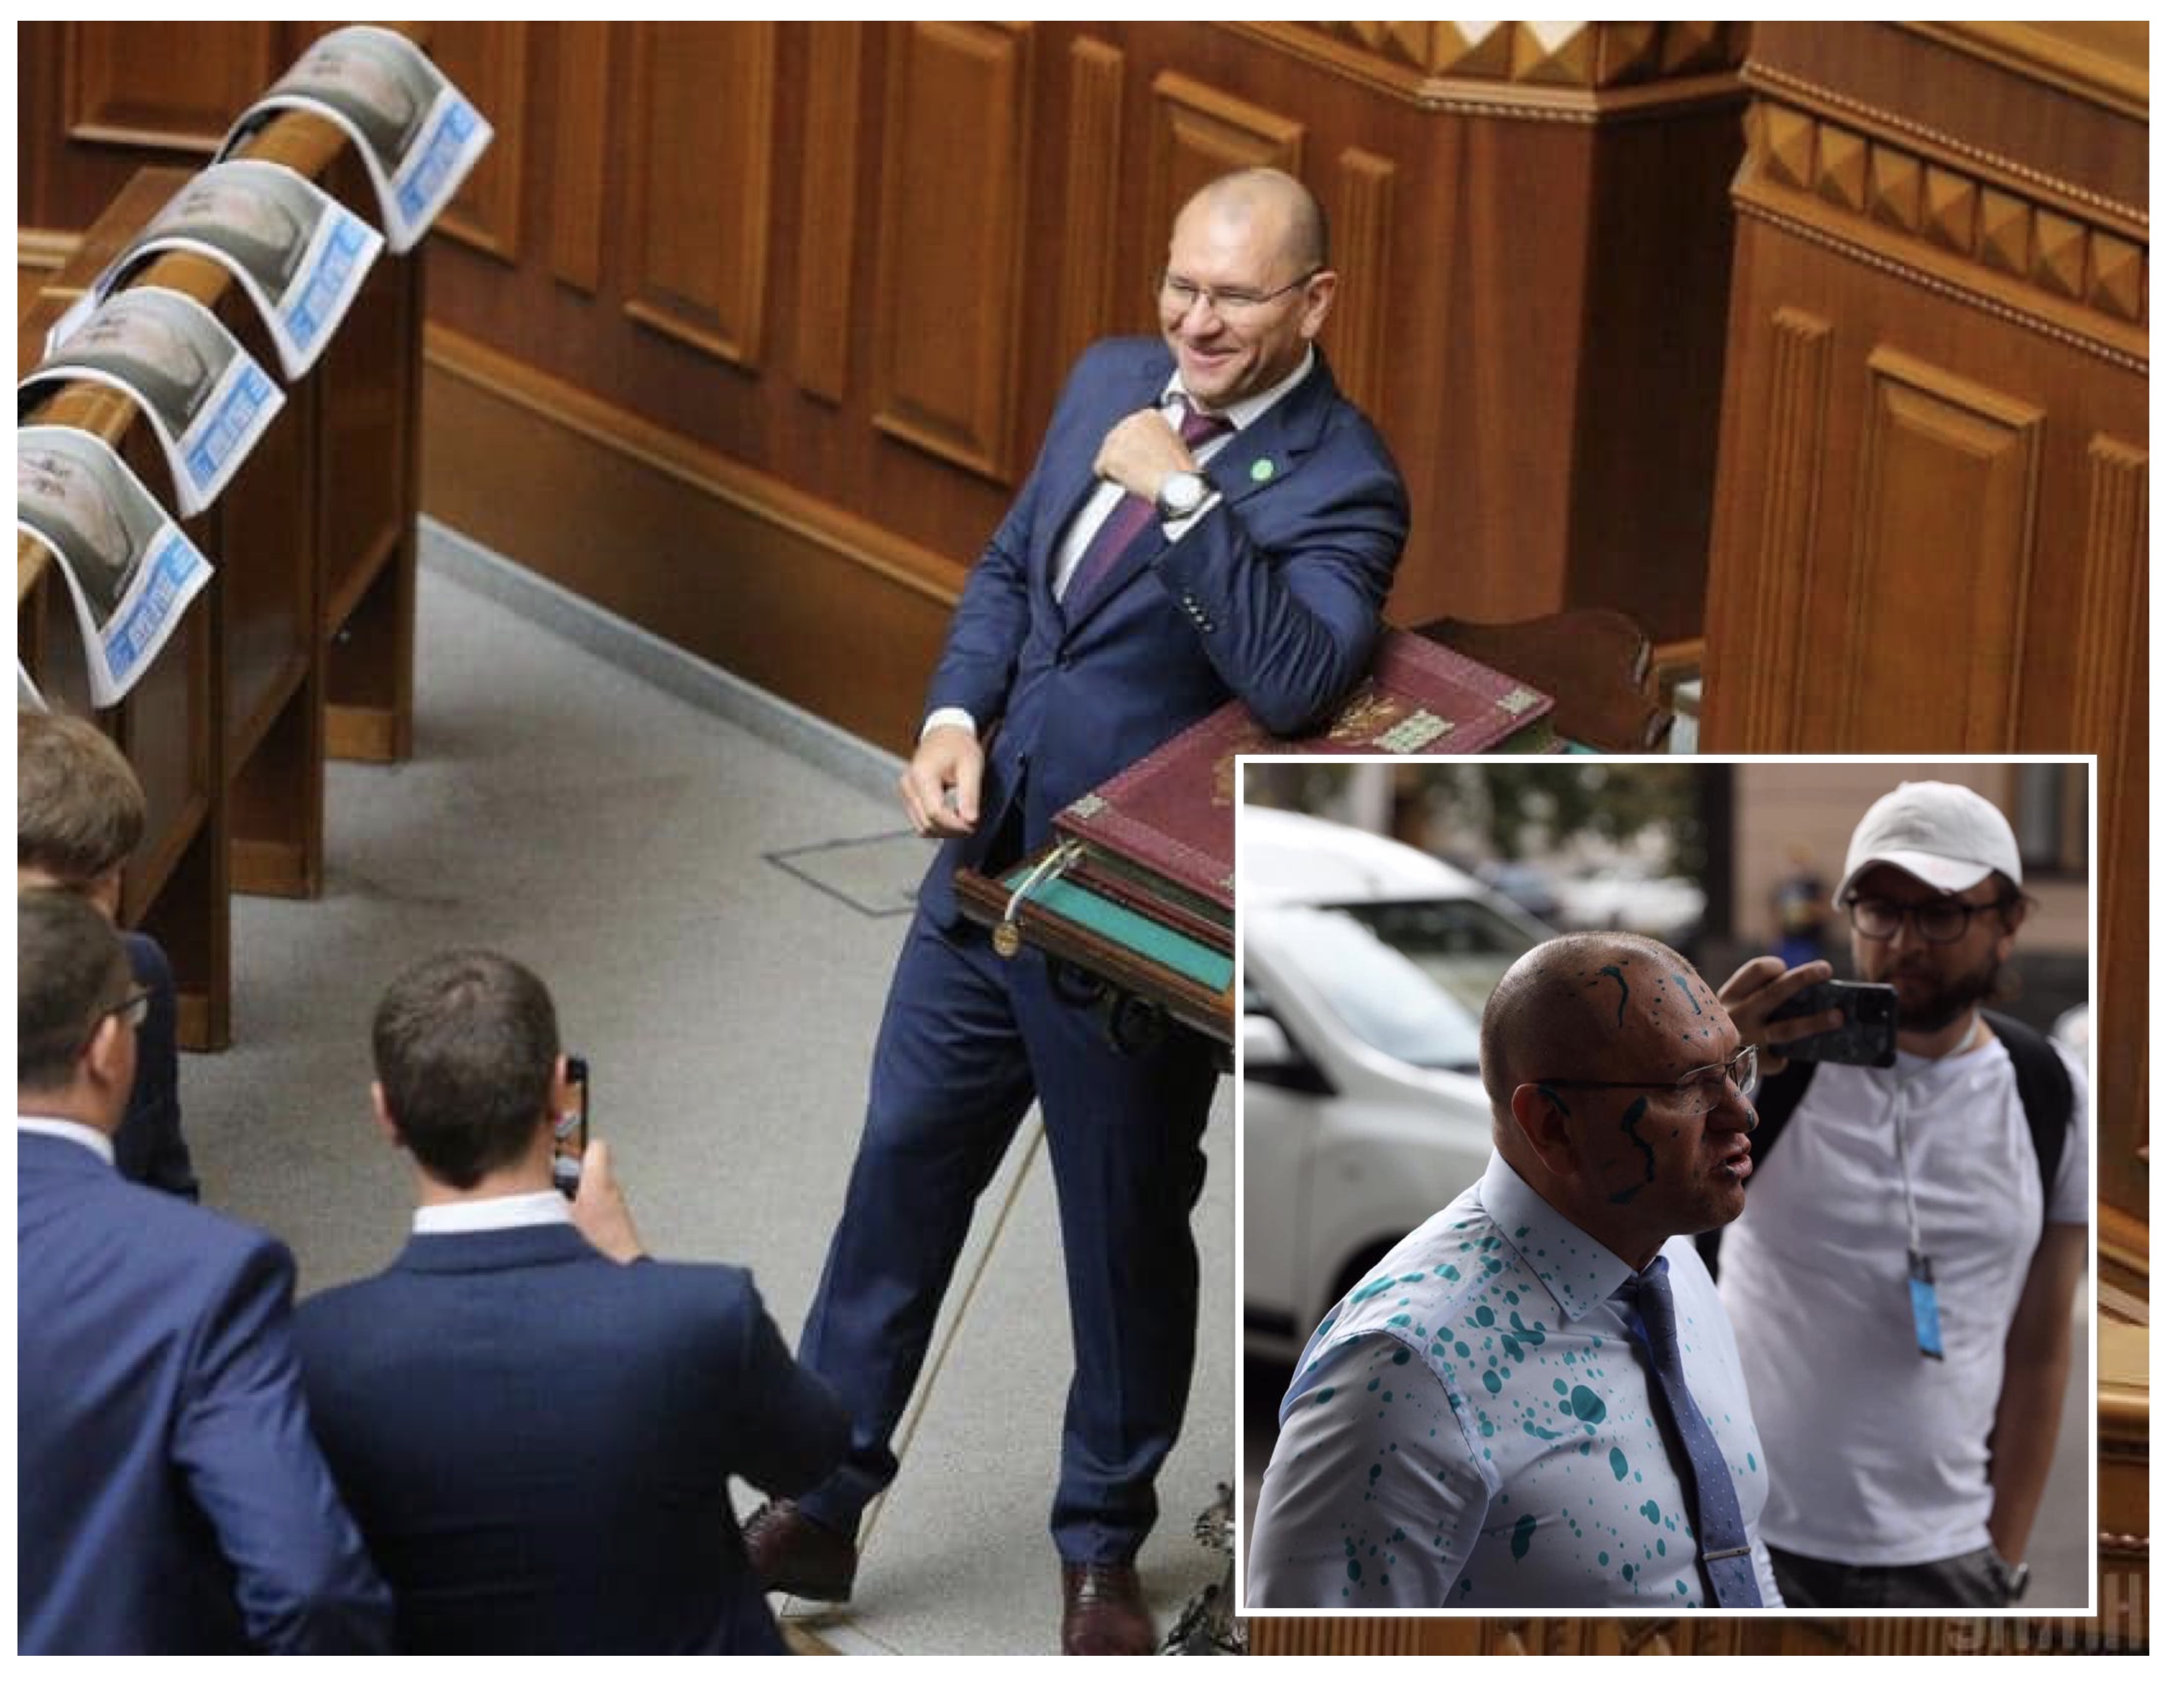 “Хочется дать тебе в морду”: запорожский депутат устроил перепалку со коллегой по фракции (ФОТО)